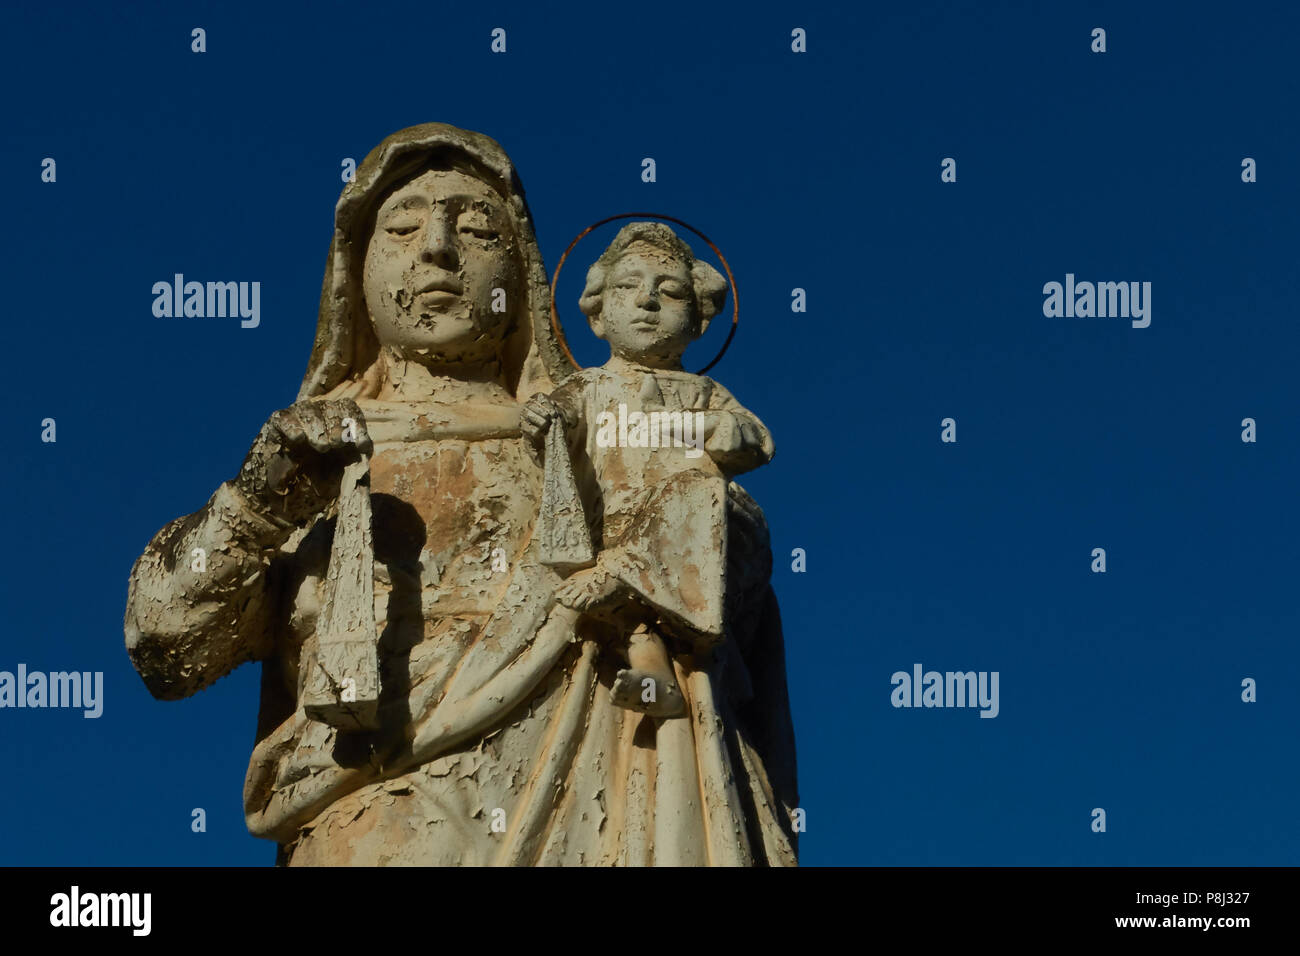 Ein Wetter abgenutzt Statue nach unten in die addolorata Cemetery, Paola, Malta, mit einem klaren blauen Himmel hinter Stockfoto